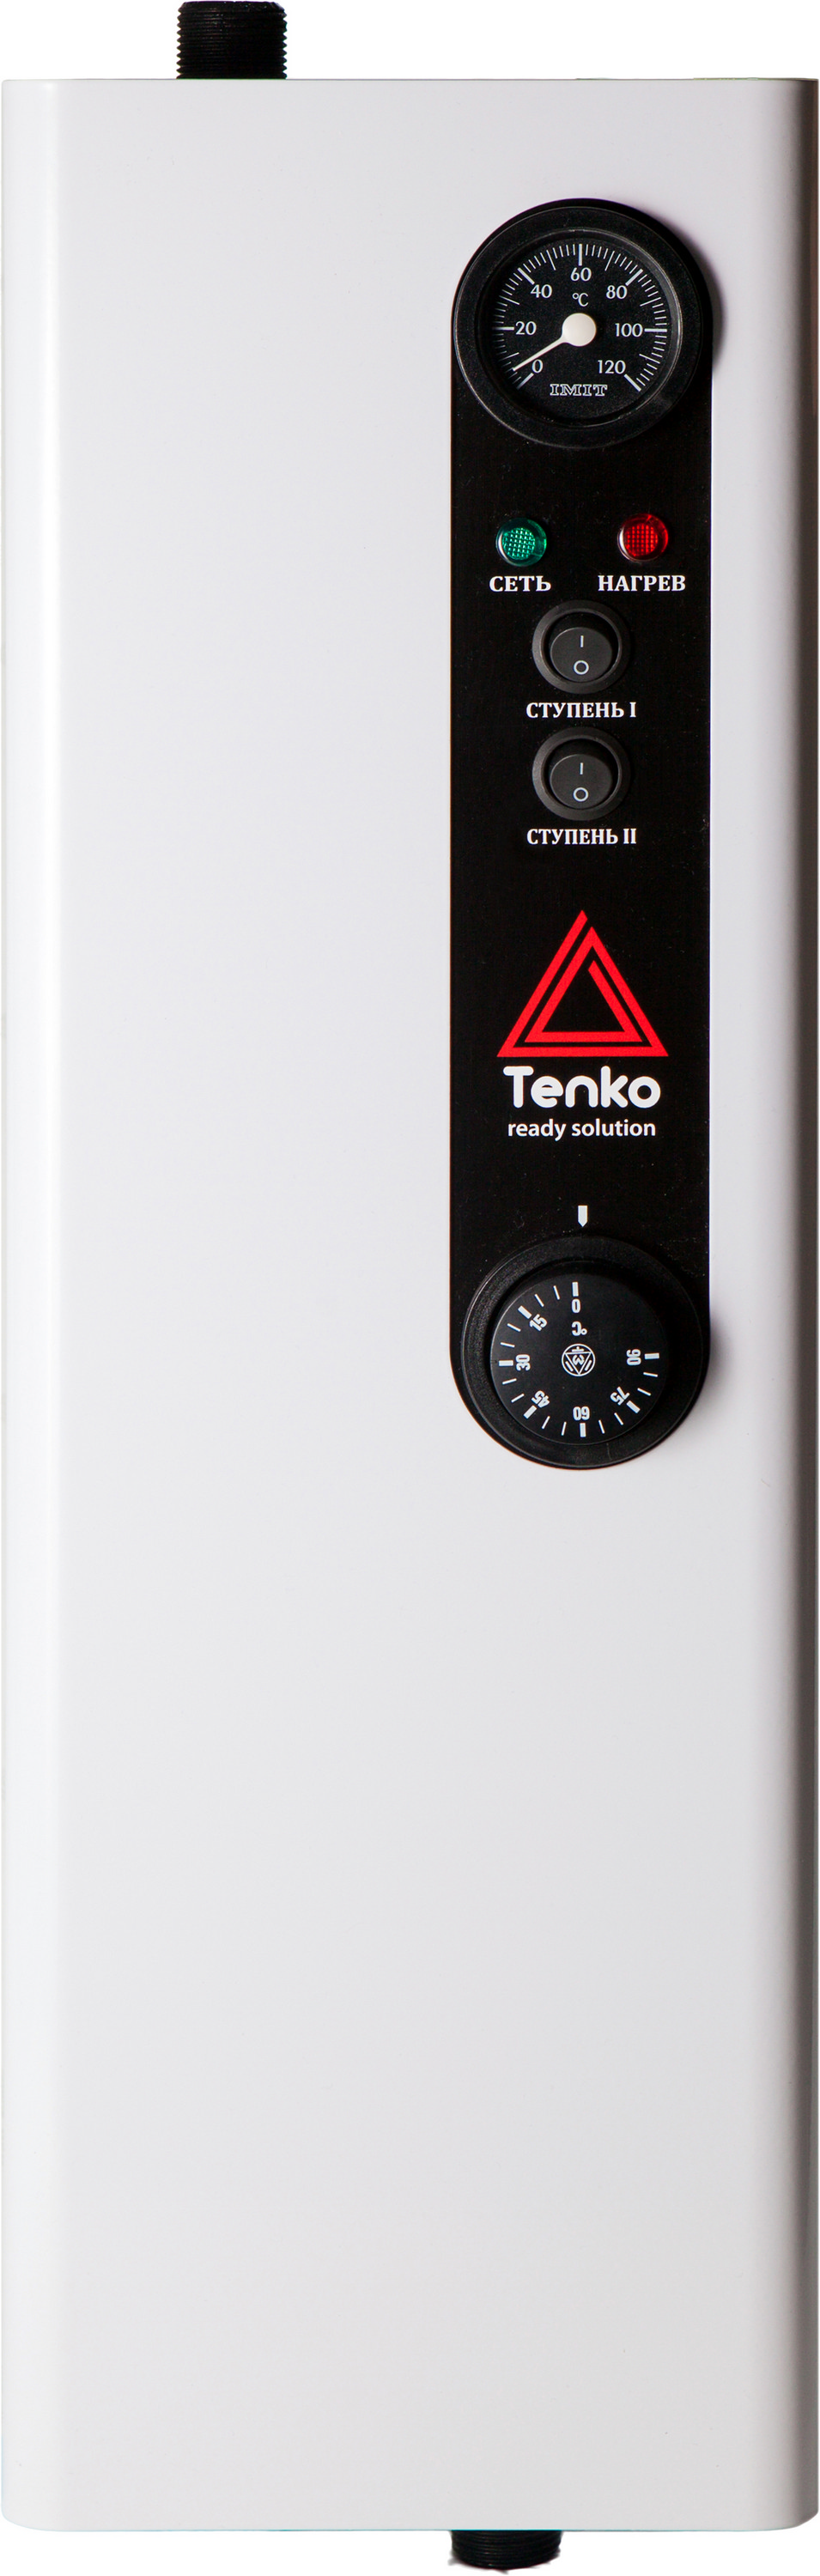 Отзывы электрокотел tenko одноконтурный Tenko Эконом 6 220 в Украине